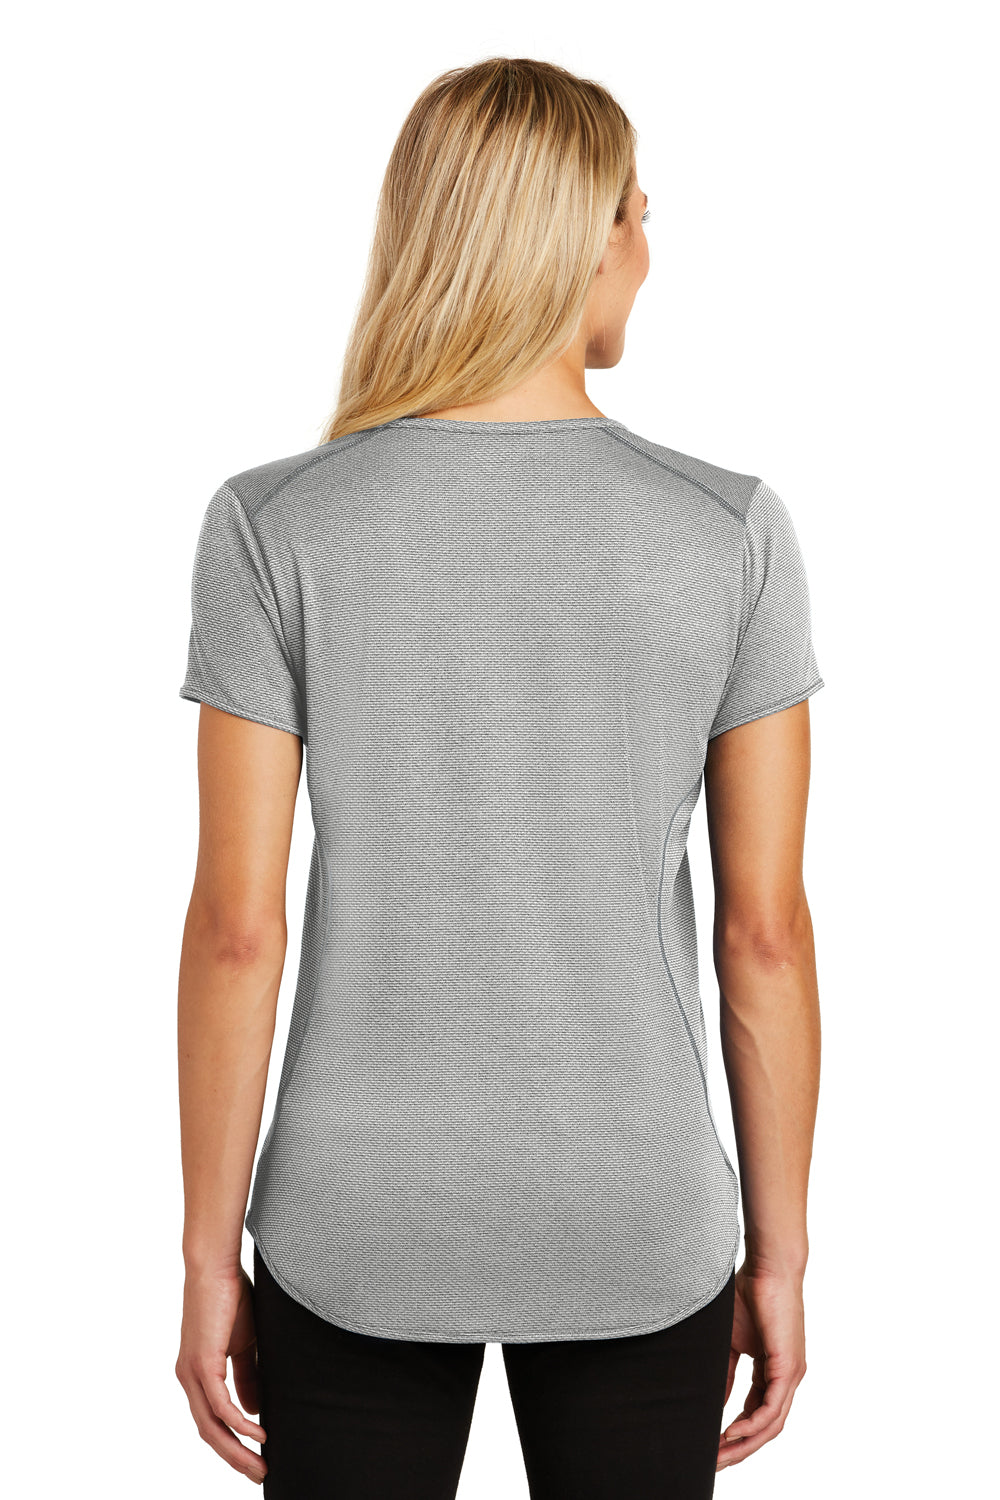 Ogio LOG134 Womens Orbit Moisture Wicking Short Sleeve Henley T-Shirt Grey/White Back